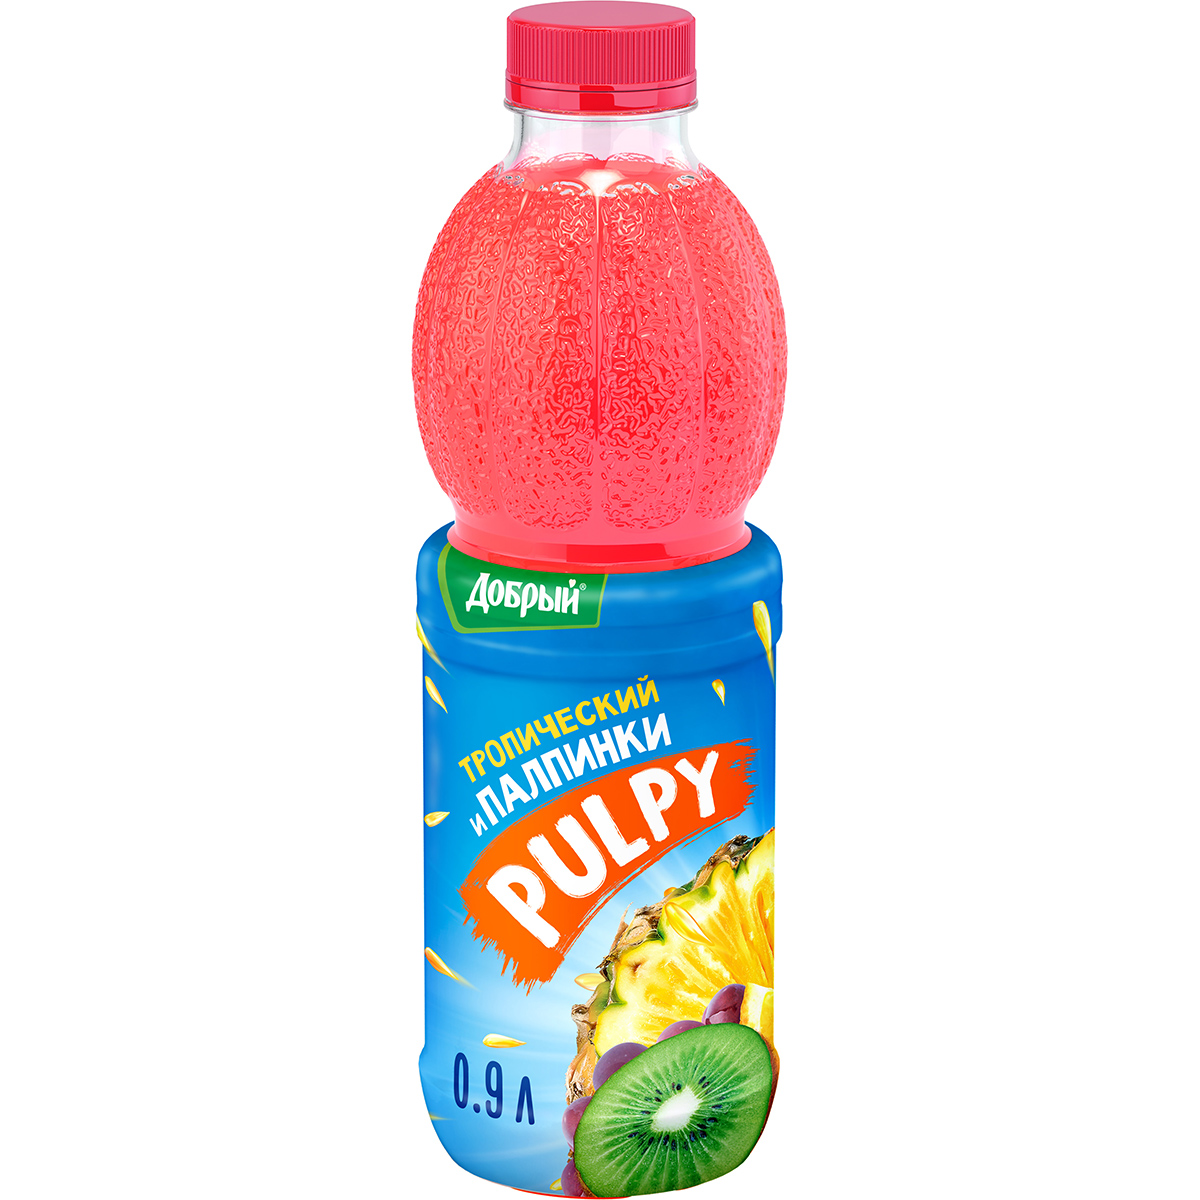 Напиток Pulpy сокосодержащий Тропический с мякотью 0,9 л напиток сокосодержащий pulpy тропический свежая мякоть 0 9 л